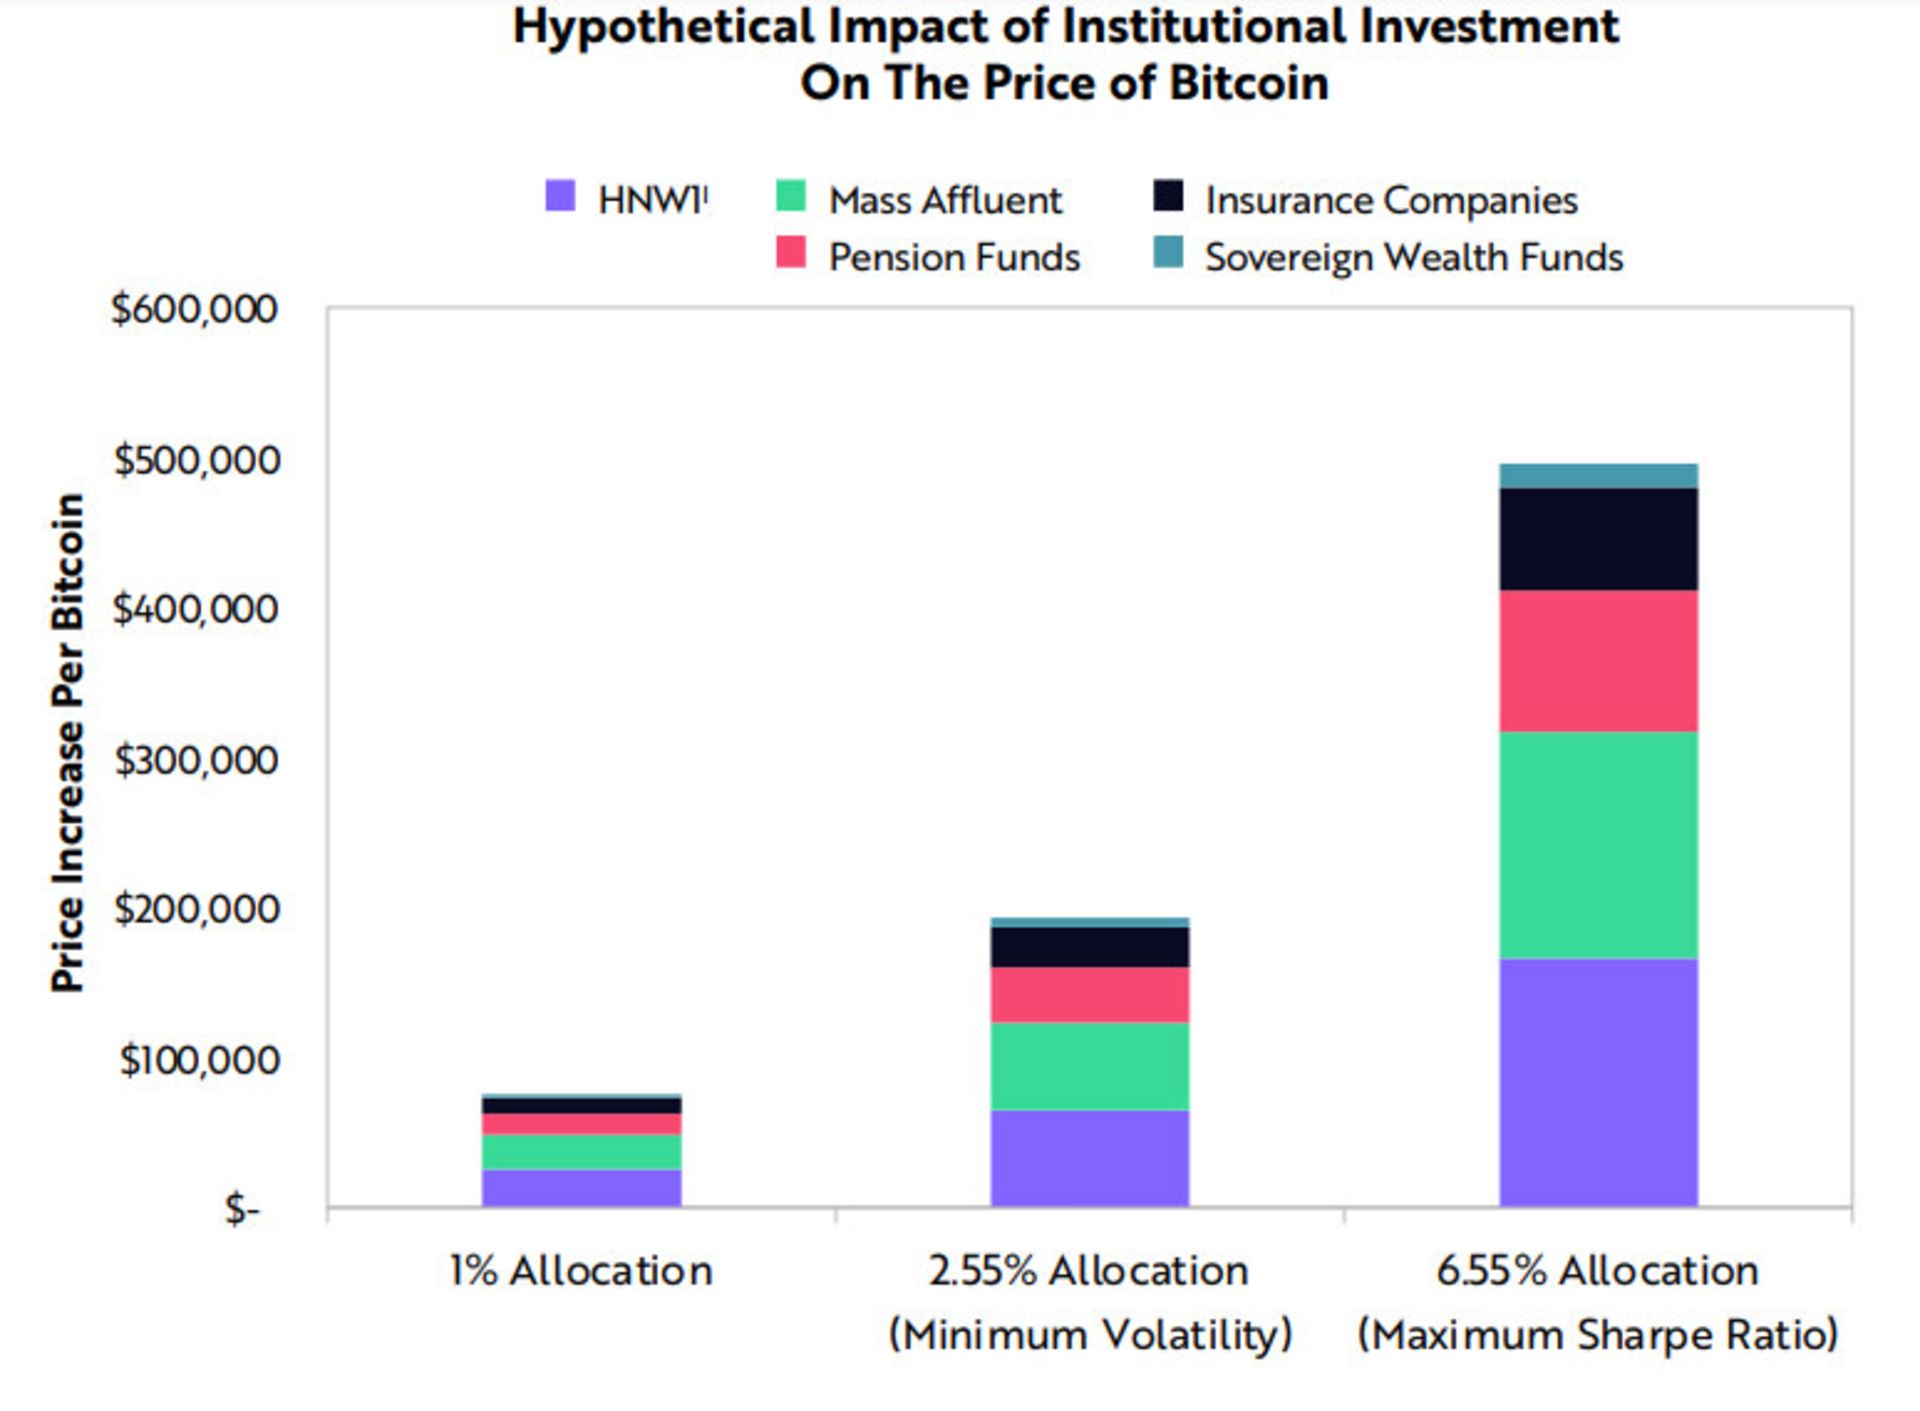 پیش بینی تاثیرگذاری سرمایه گذاری شرکتی روی ارزش بیت کوین / Bitcoin